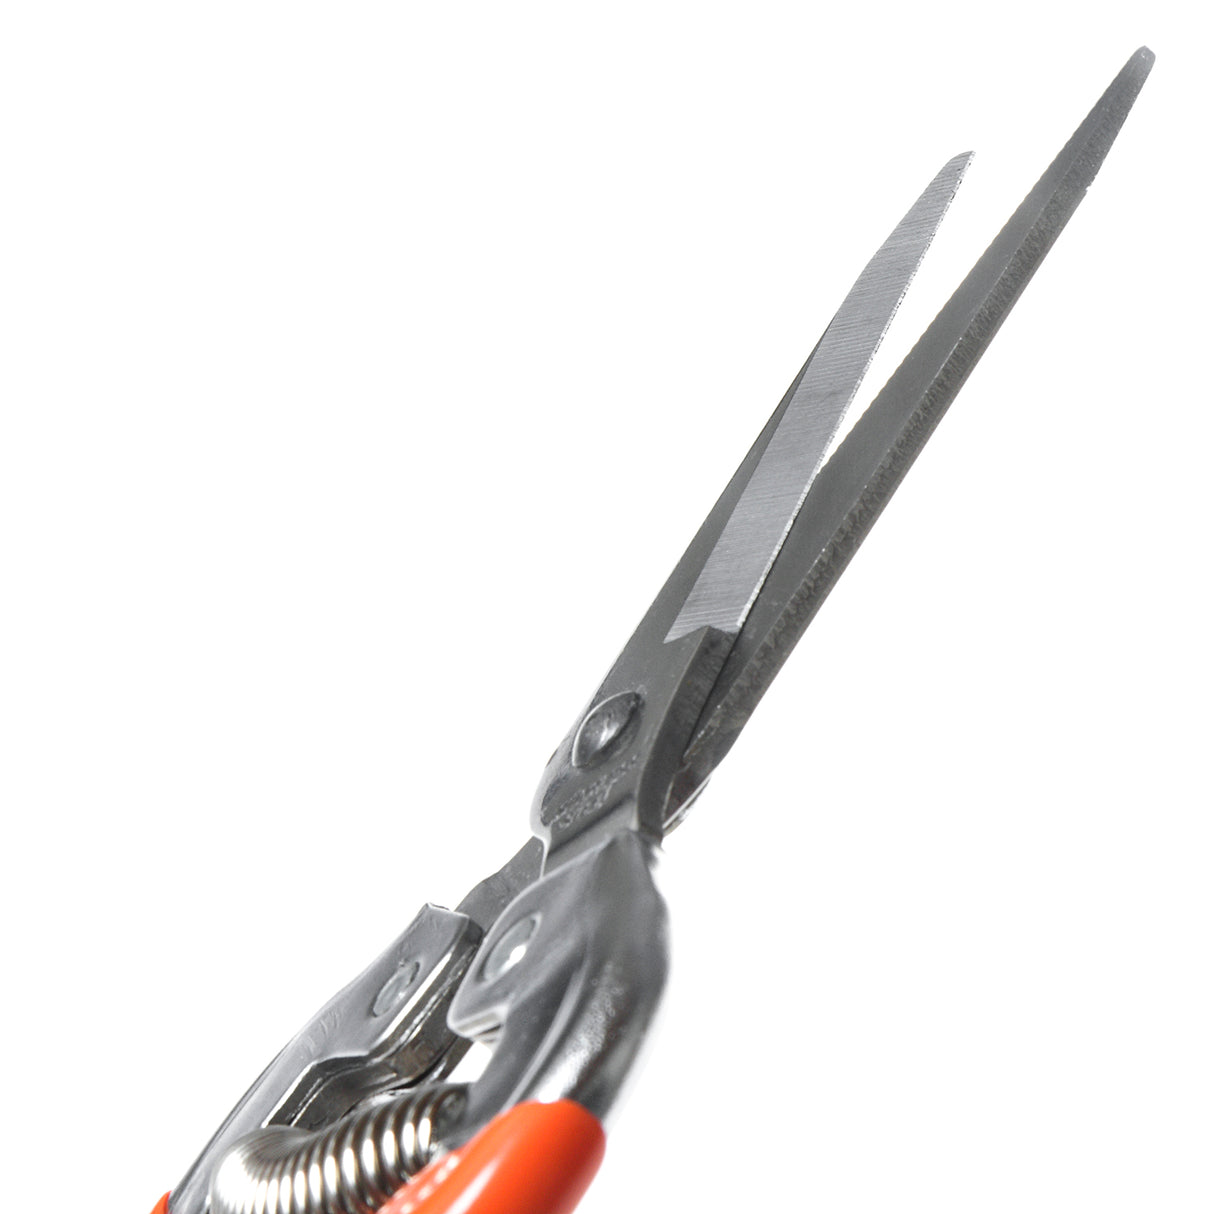 VAPS010 Stainless Steel Blade Pruning Secateur, Best Pruner For Gardens, Nursery, Vegetable Pruning, Flower Stems